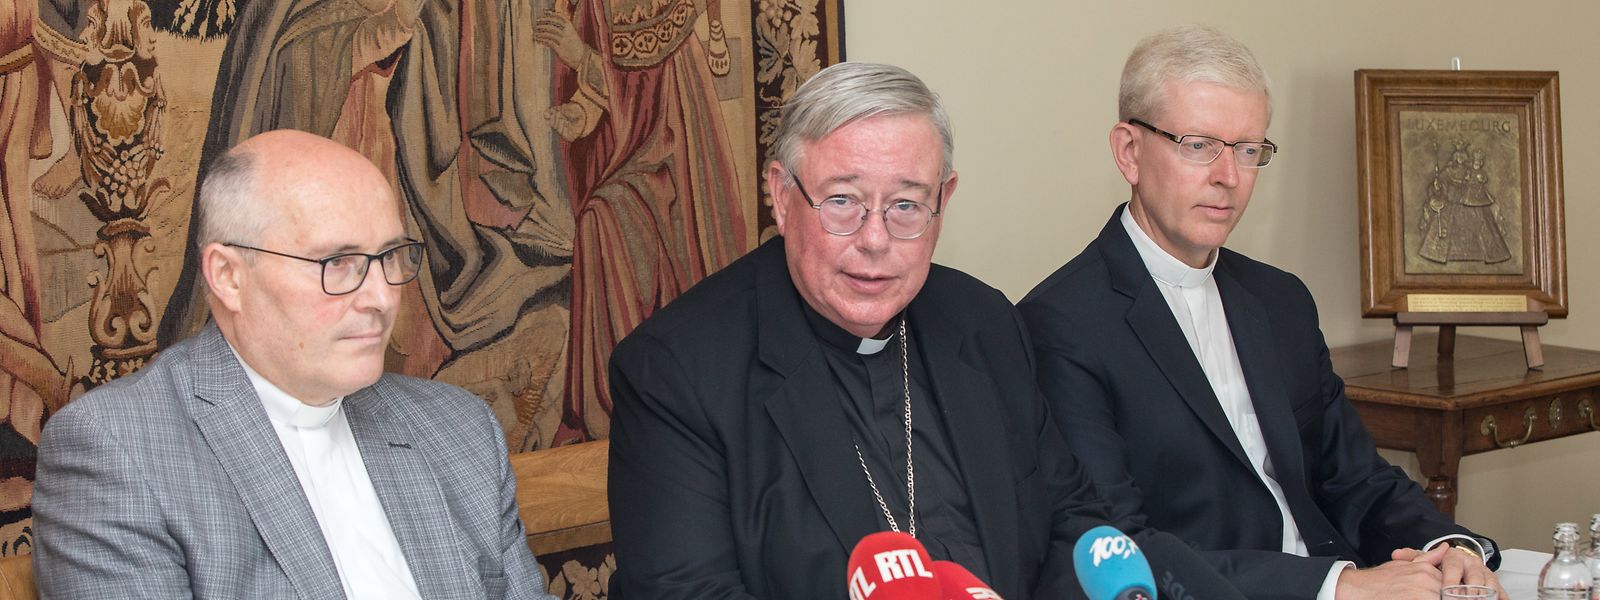 Der neue Weihbischof Leo Wagener, Erzbischof Jean-Claude Hollerich und der neue Generalvikar Patrick Muller.